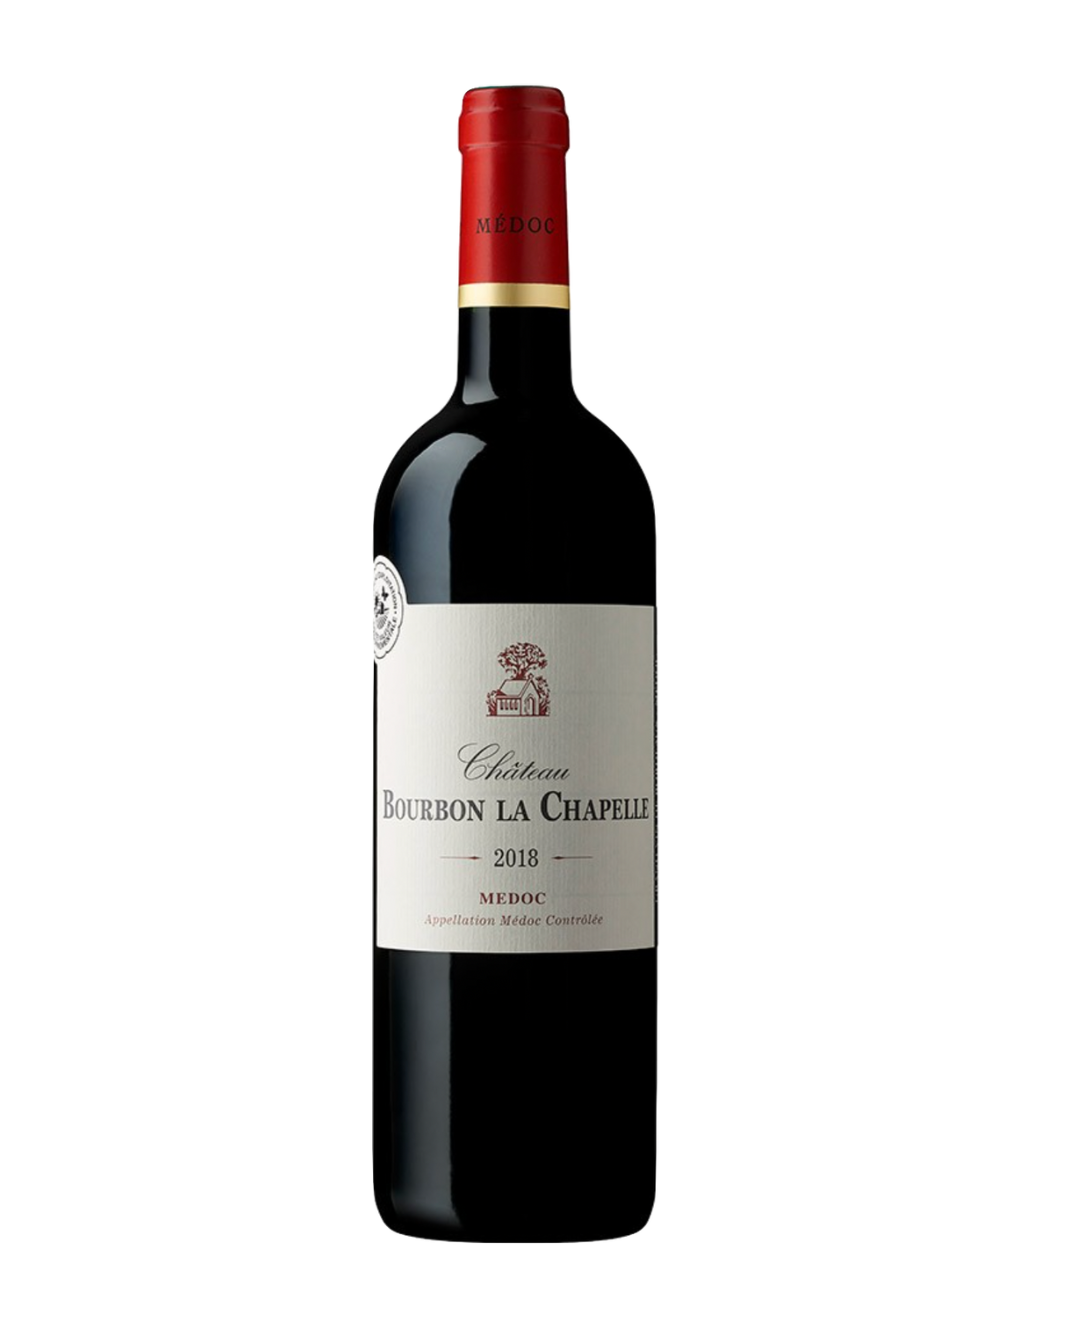 Château Bourbon la Chapelle – Con-nois-seur Wine Imports